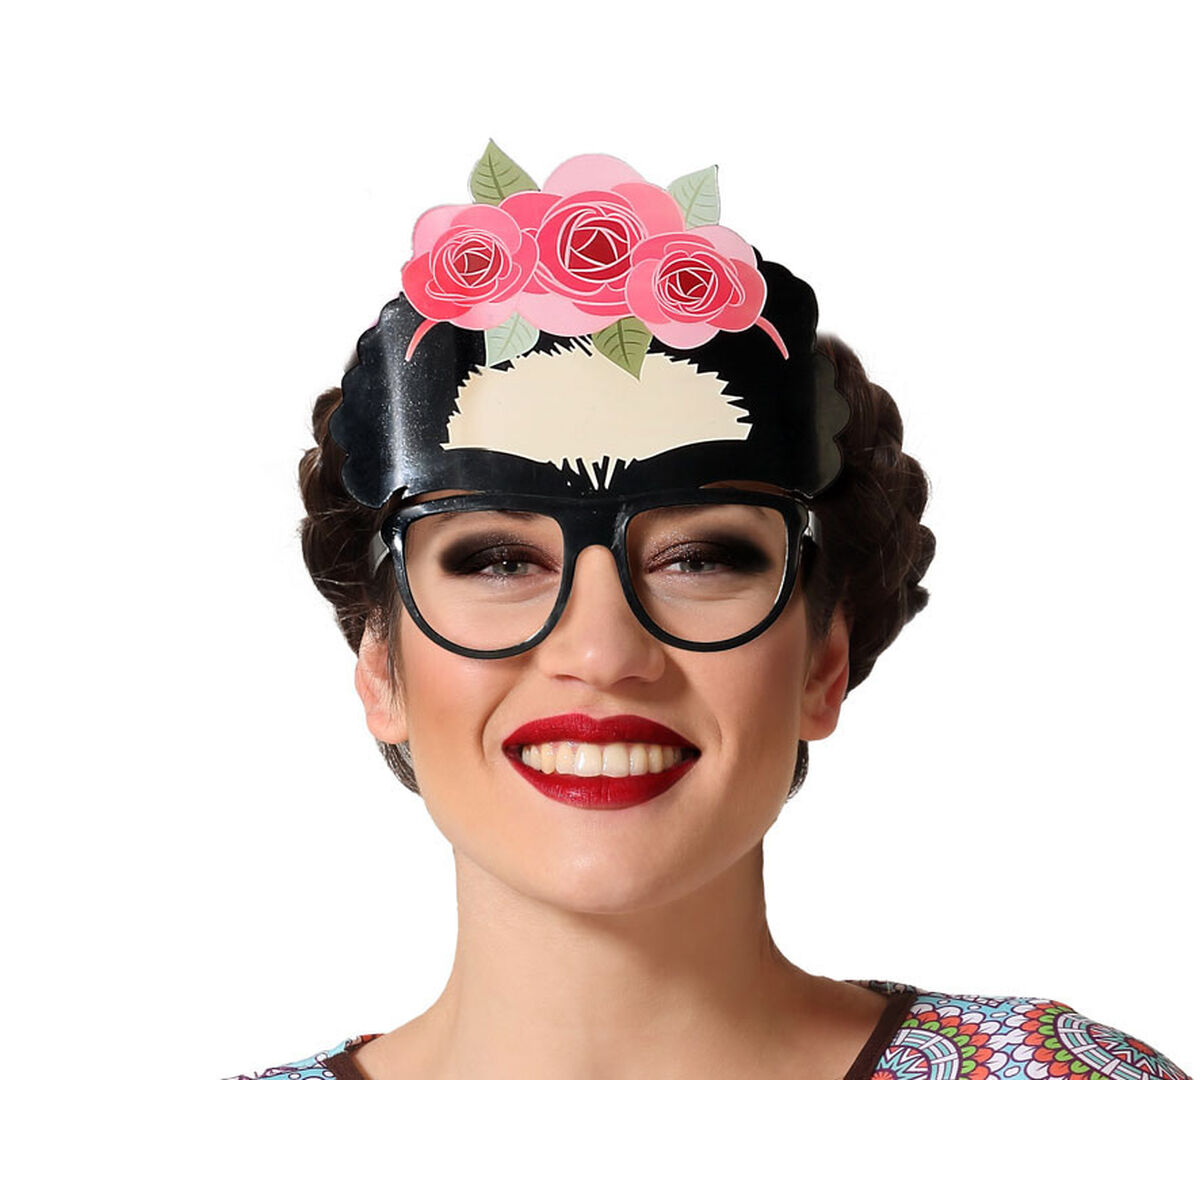 Ochelari 15 cm Accesorii pentru Costumație Frida